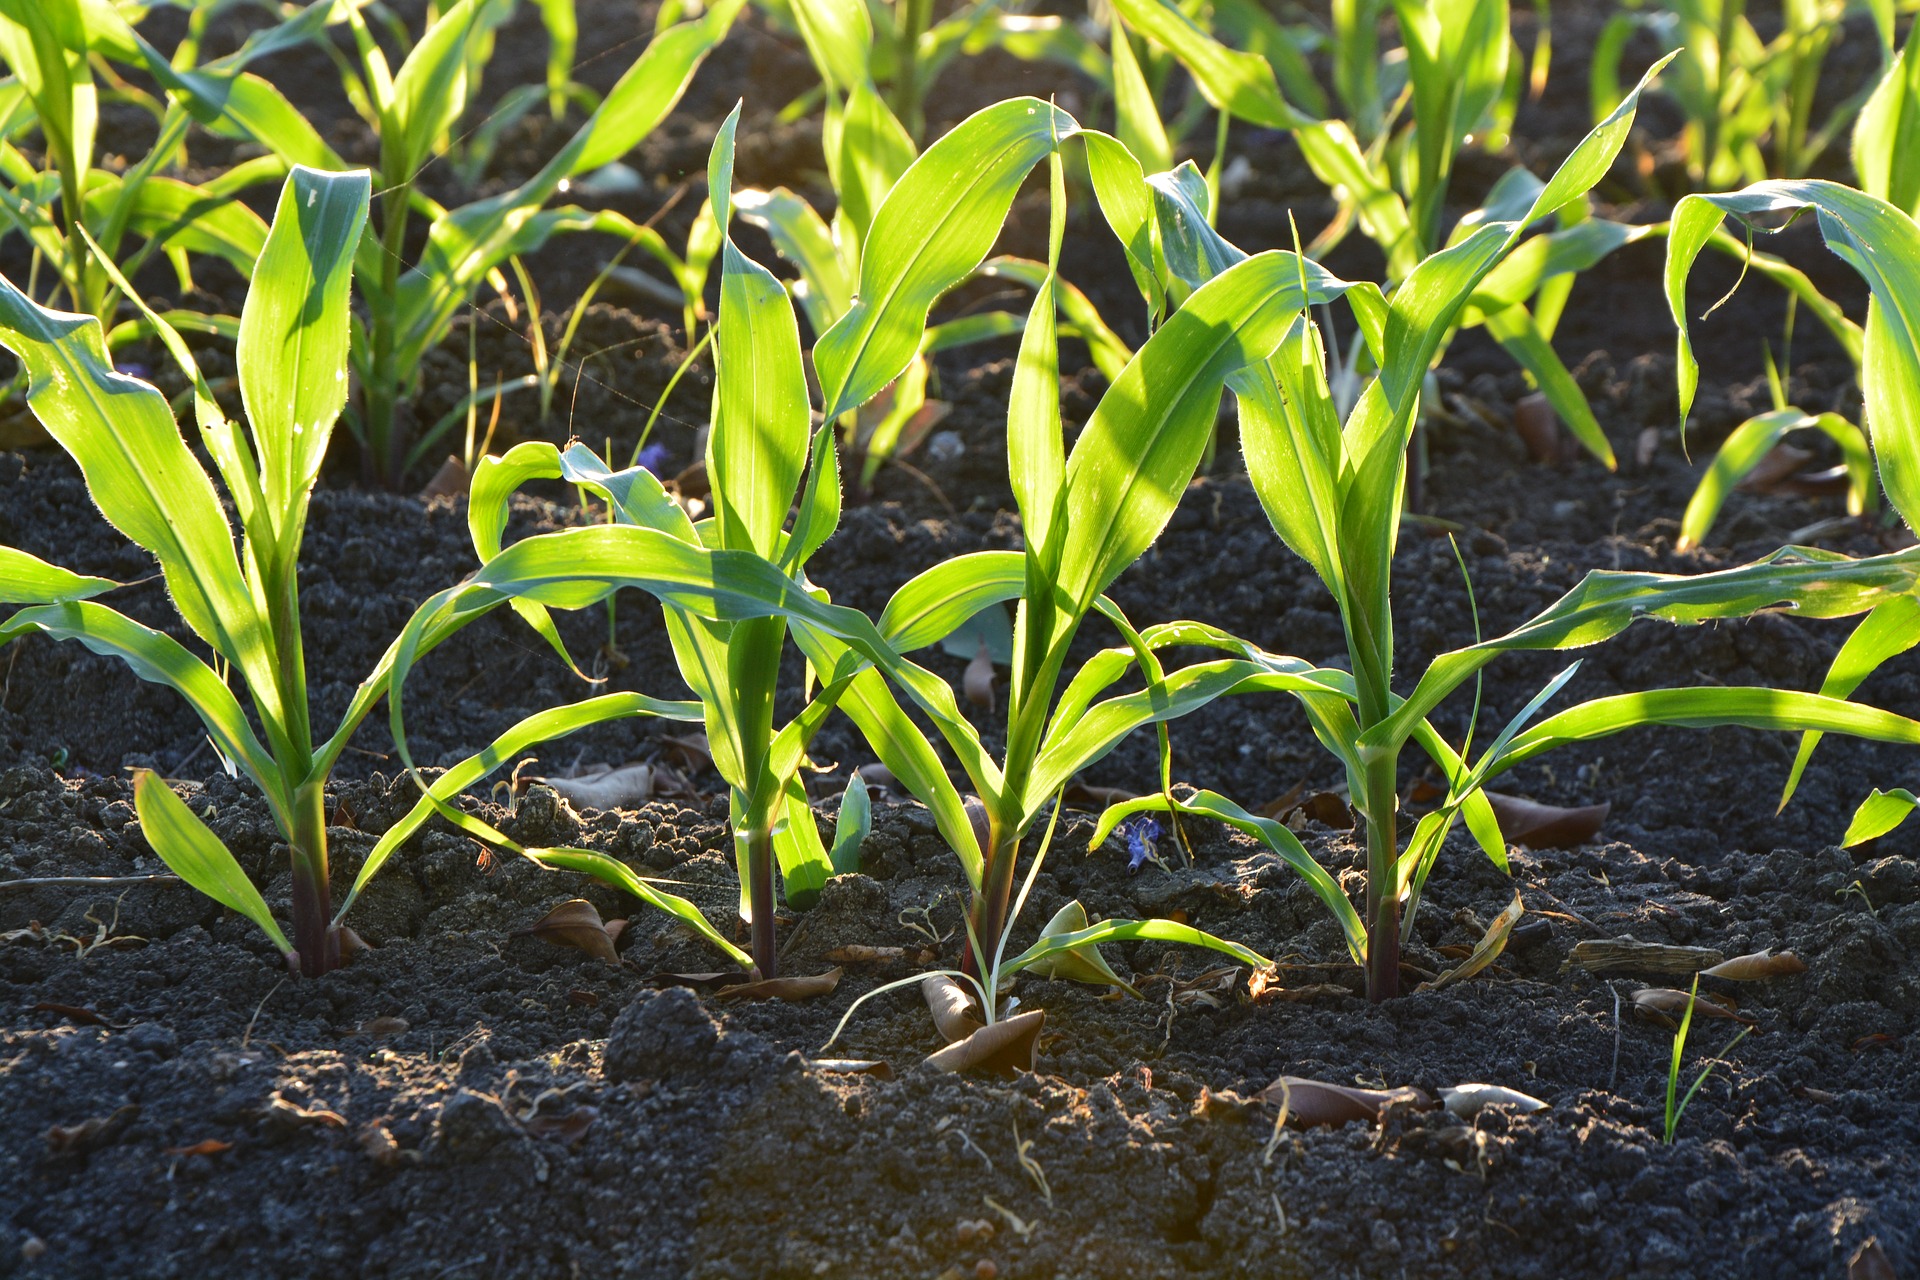 Corn in soil. Photo courtesy of Pixabay.